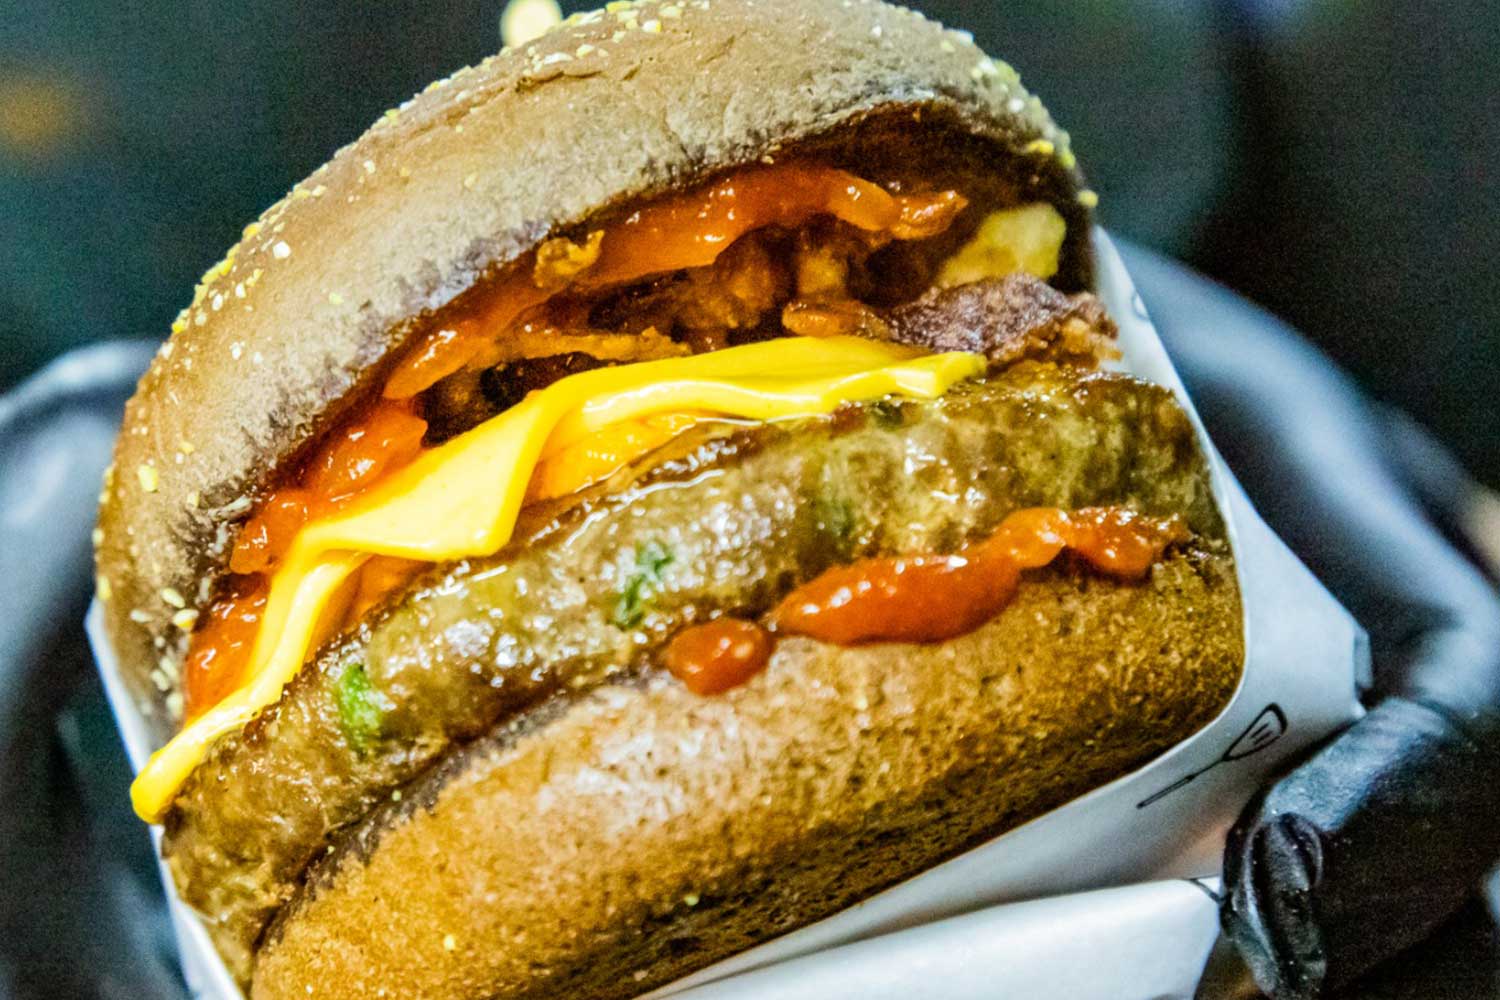 O "Midnight Oil" é preparado com hambúrguer Angus, cheddar Polenghi, queijo cheddar cremoso, crispy de cebola-roxa, molho barbecue e pão australiano (Foto: Divulgação)